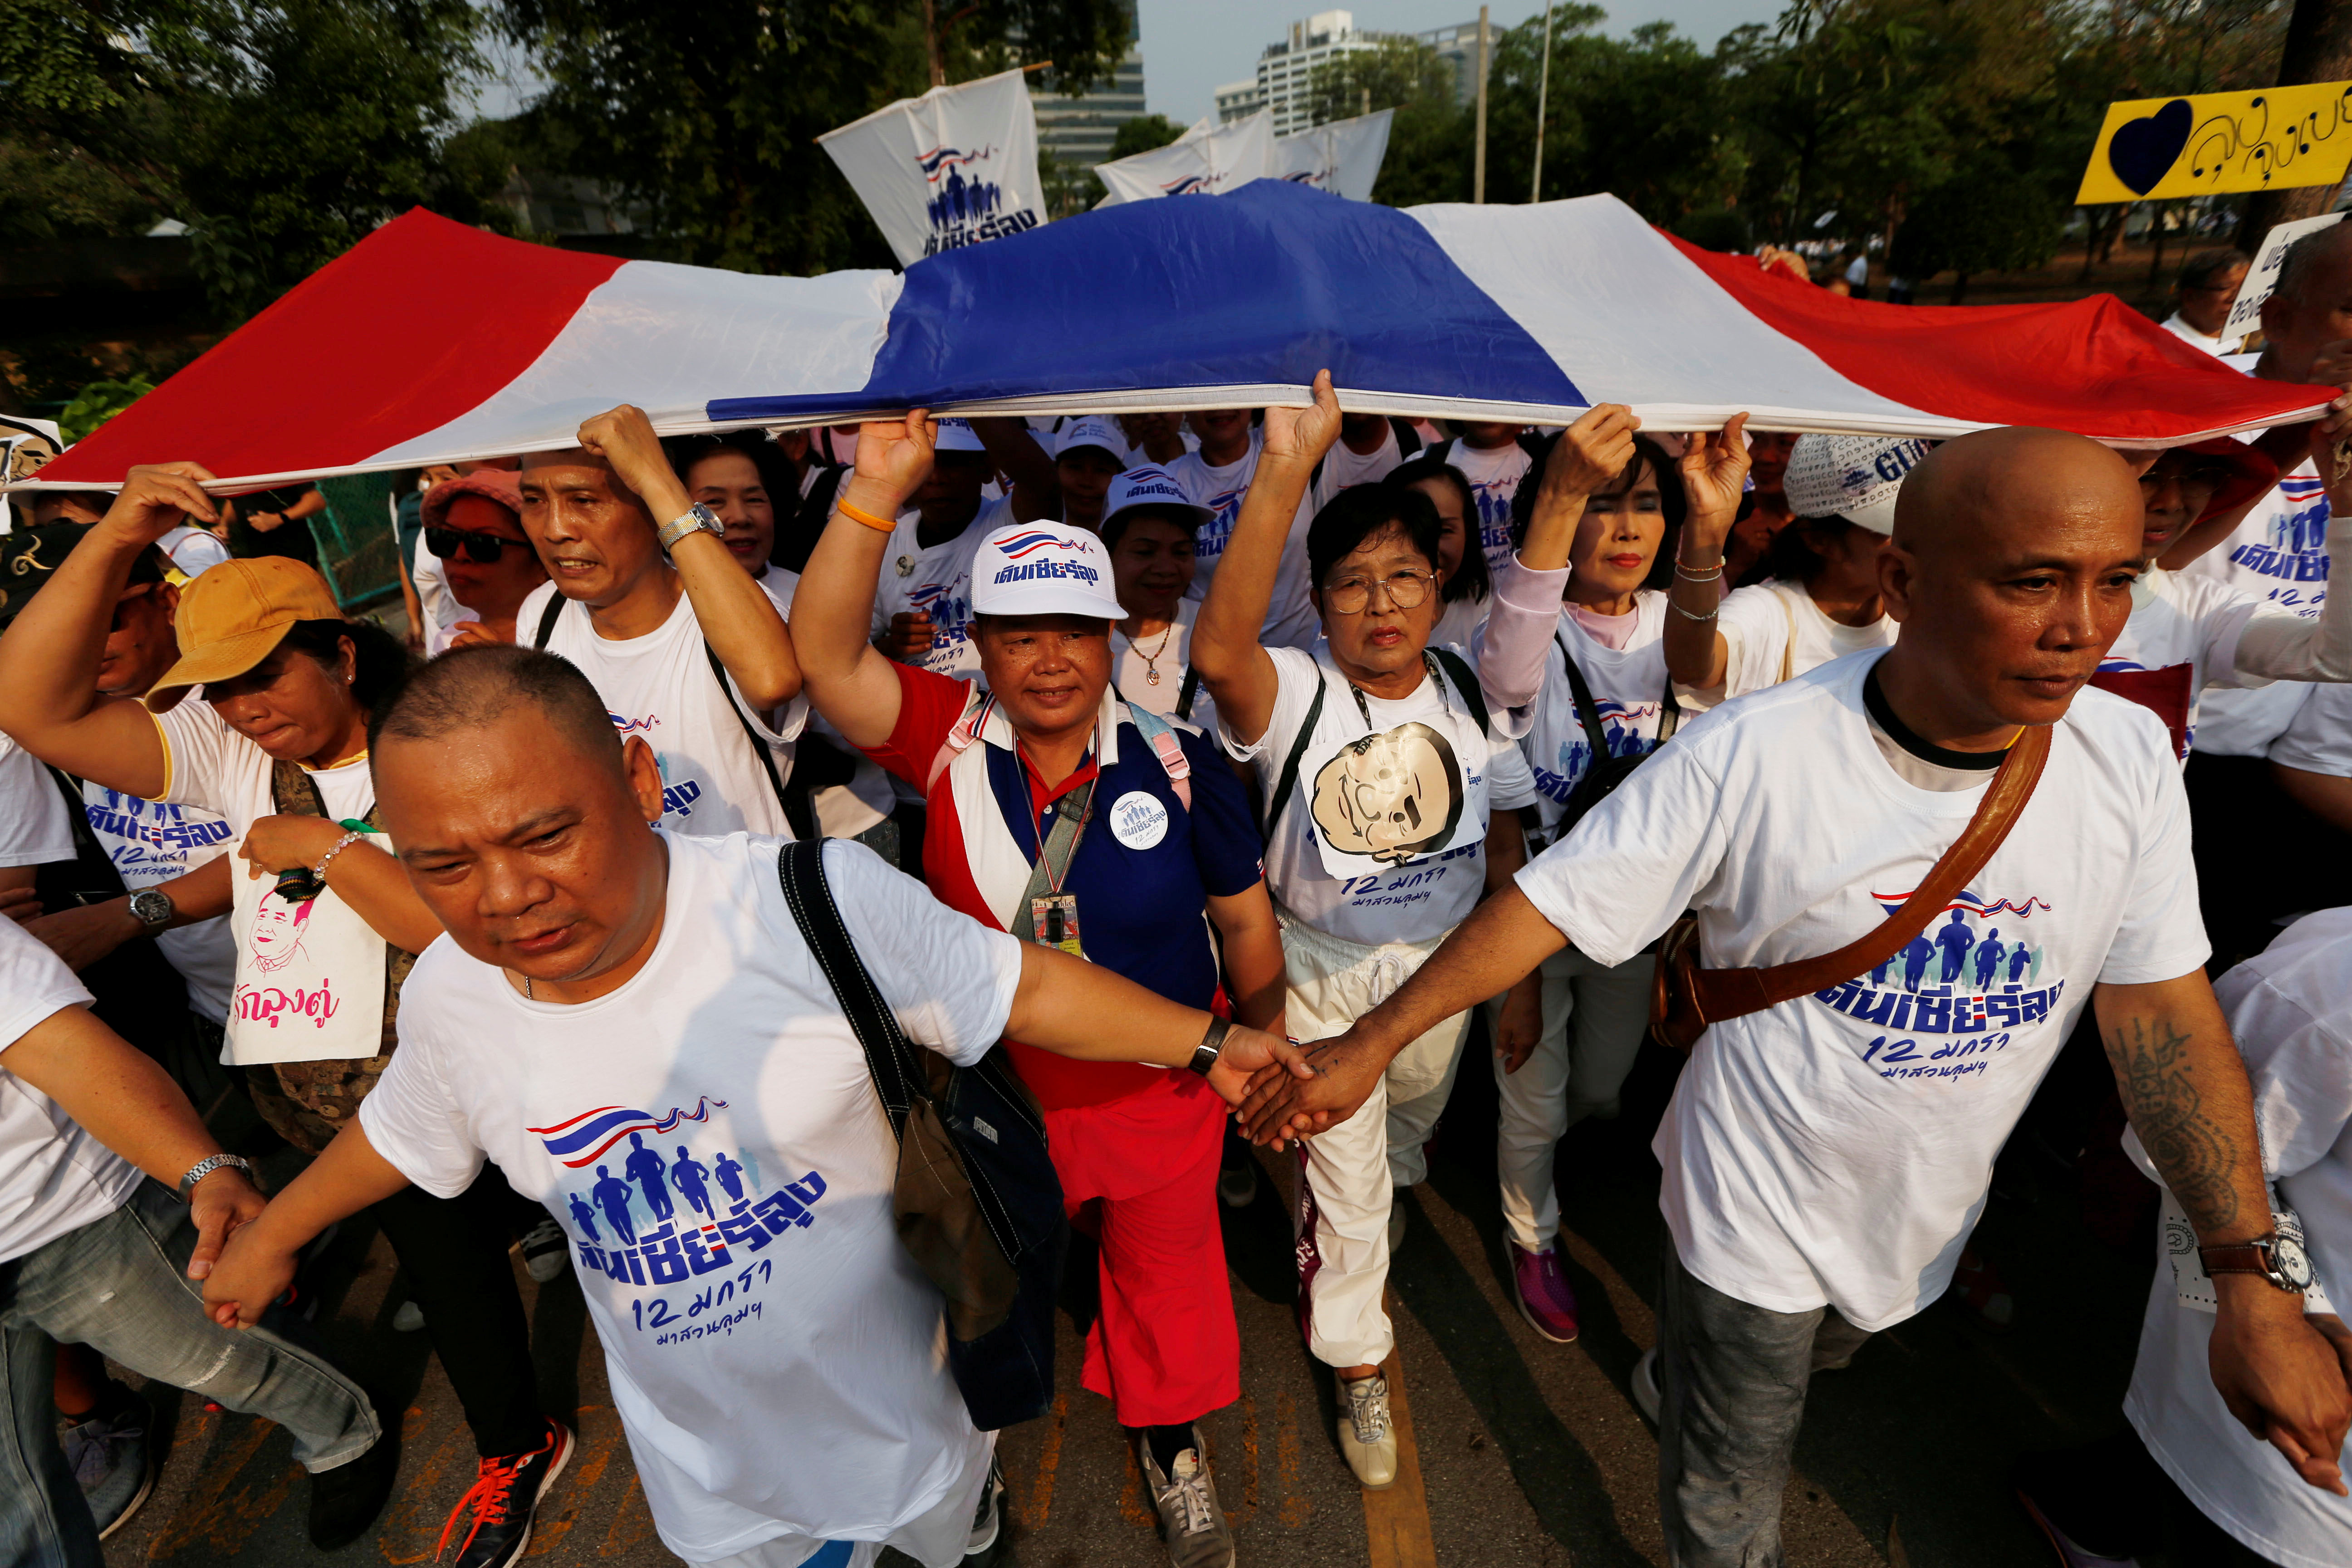 Χιλιάδες άνθρωποι συμμετείχαν σε αγώνα δρόμου στη Μπανγκόκ “κατά της δικτατορίας”